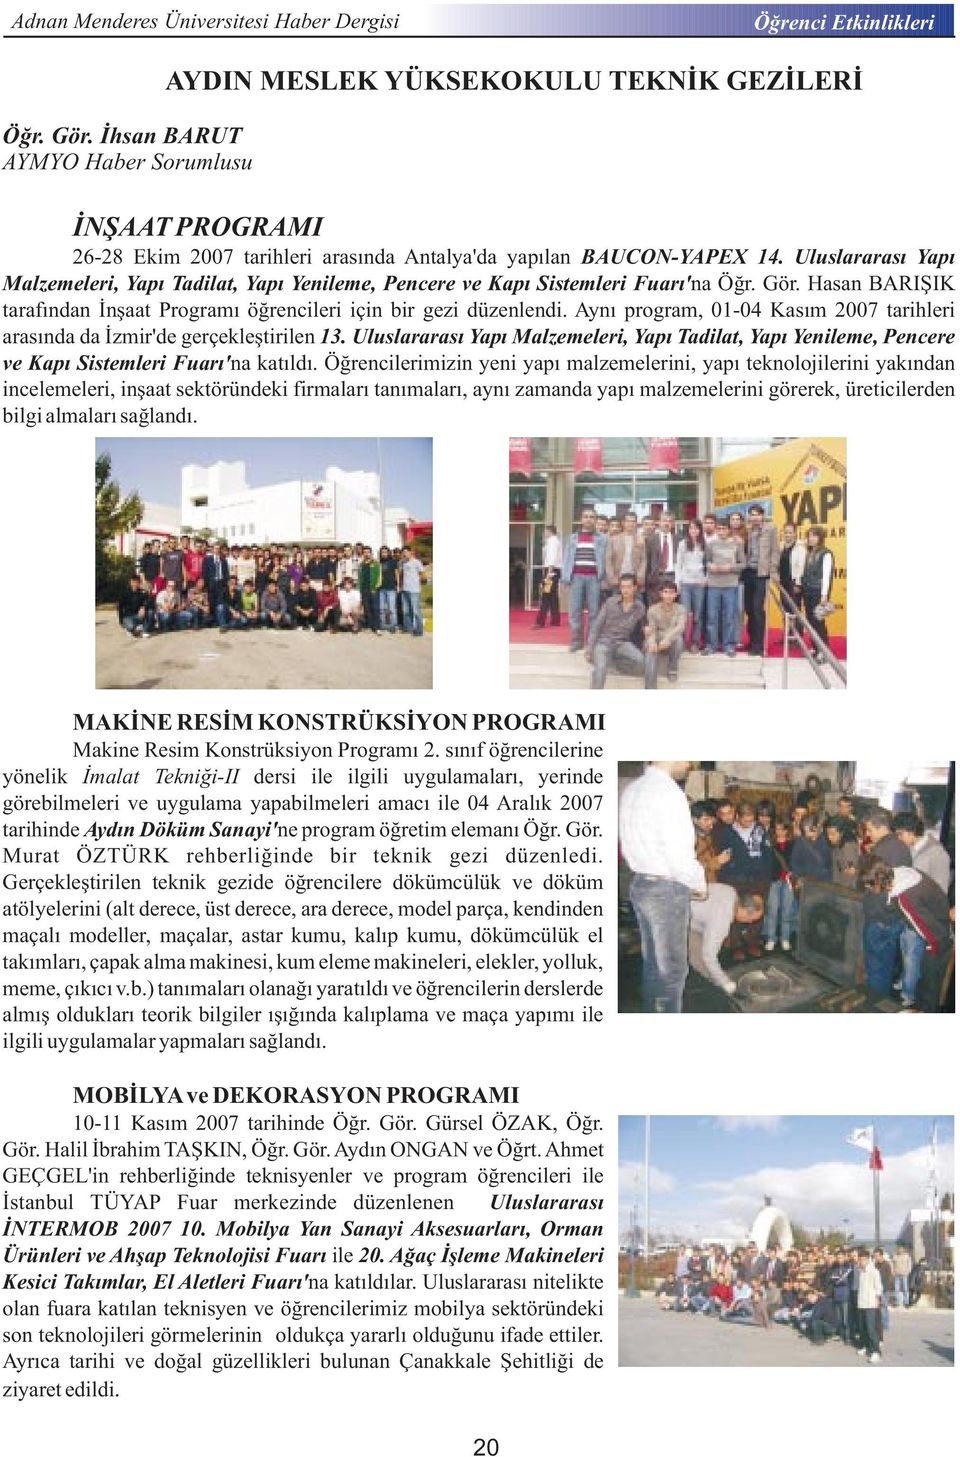 Aynı program, 01-04 Kasım 2007 tarihleri arasında da İzmir'de gerçekleştirilen 13. Uluslararası Yapı Malzemeleri, Yapı Tadilat, Yapı Yenileme, Pencere ve Kapı Sistemleri Fuarı' na katıldı.